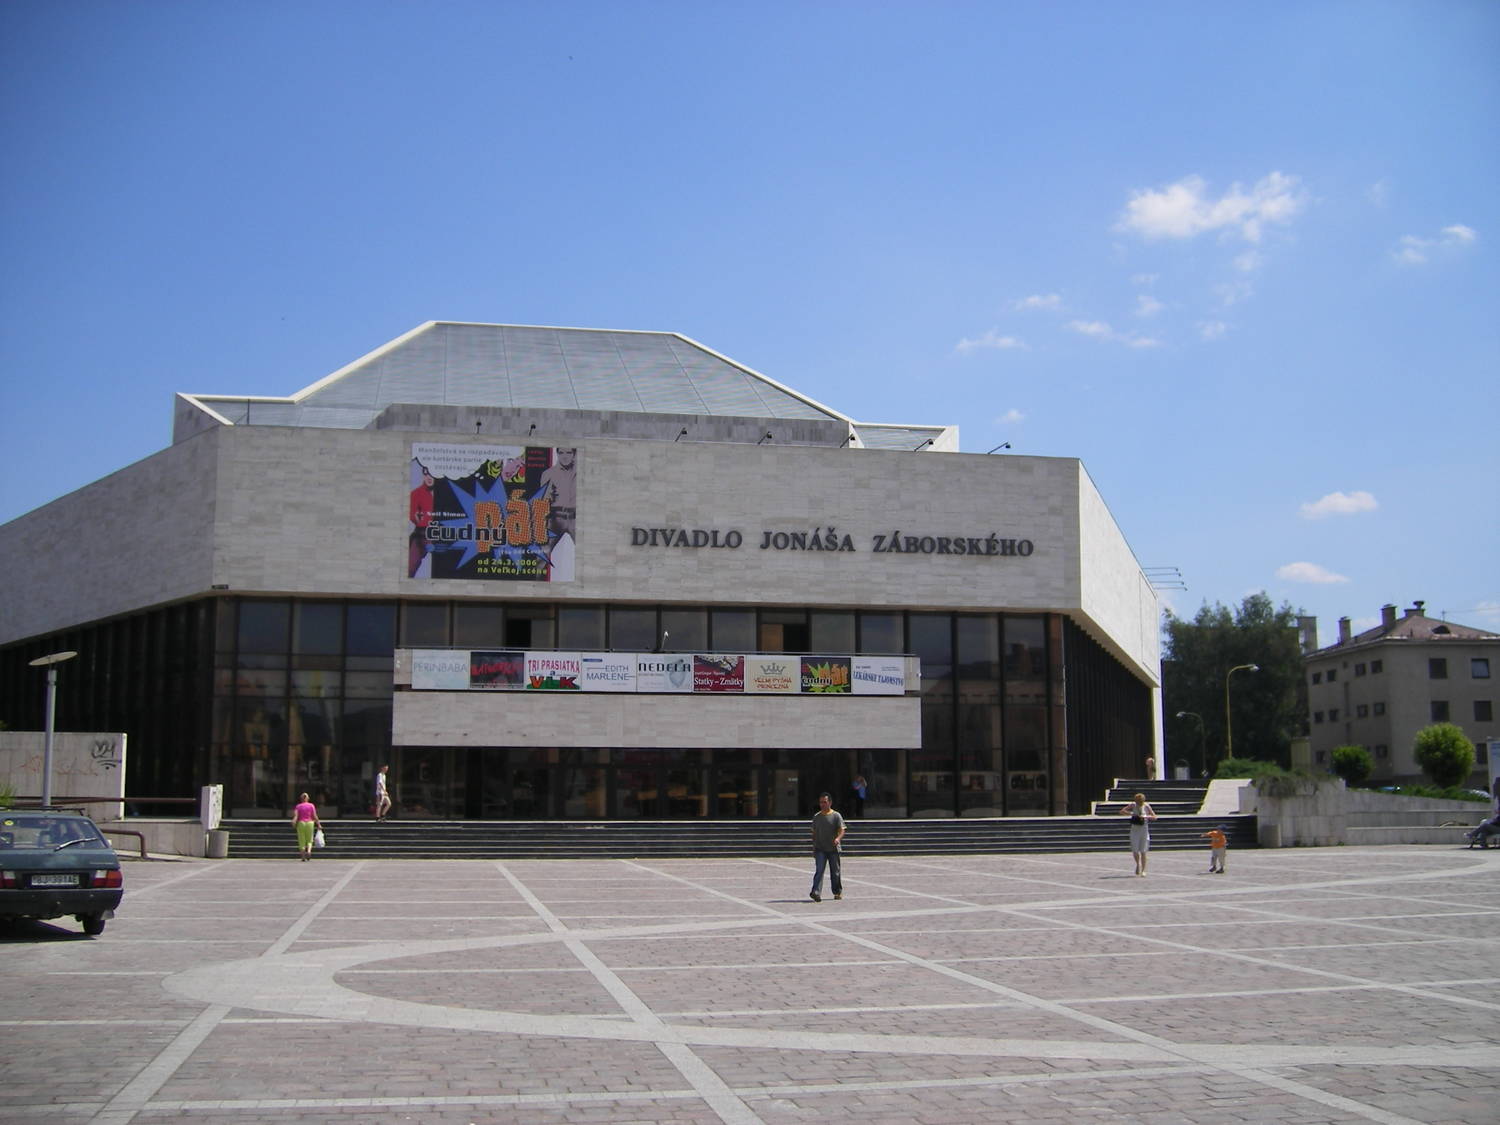 Divadlo Jonáša Záborského